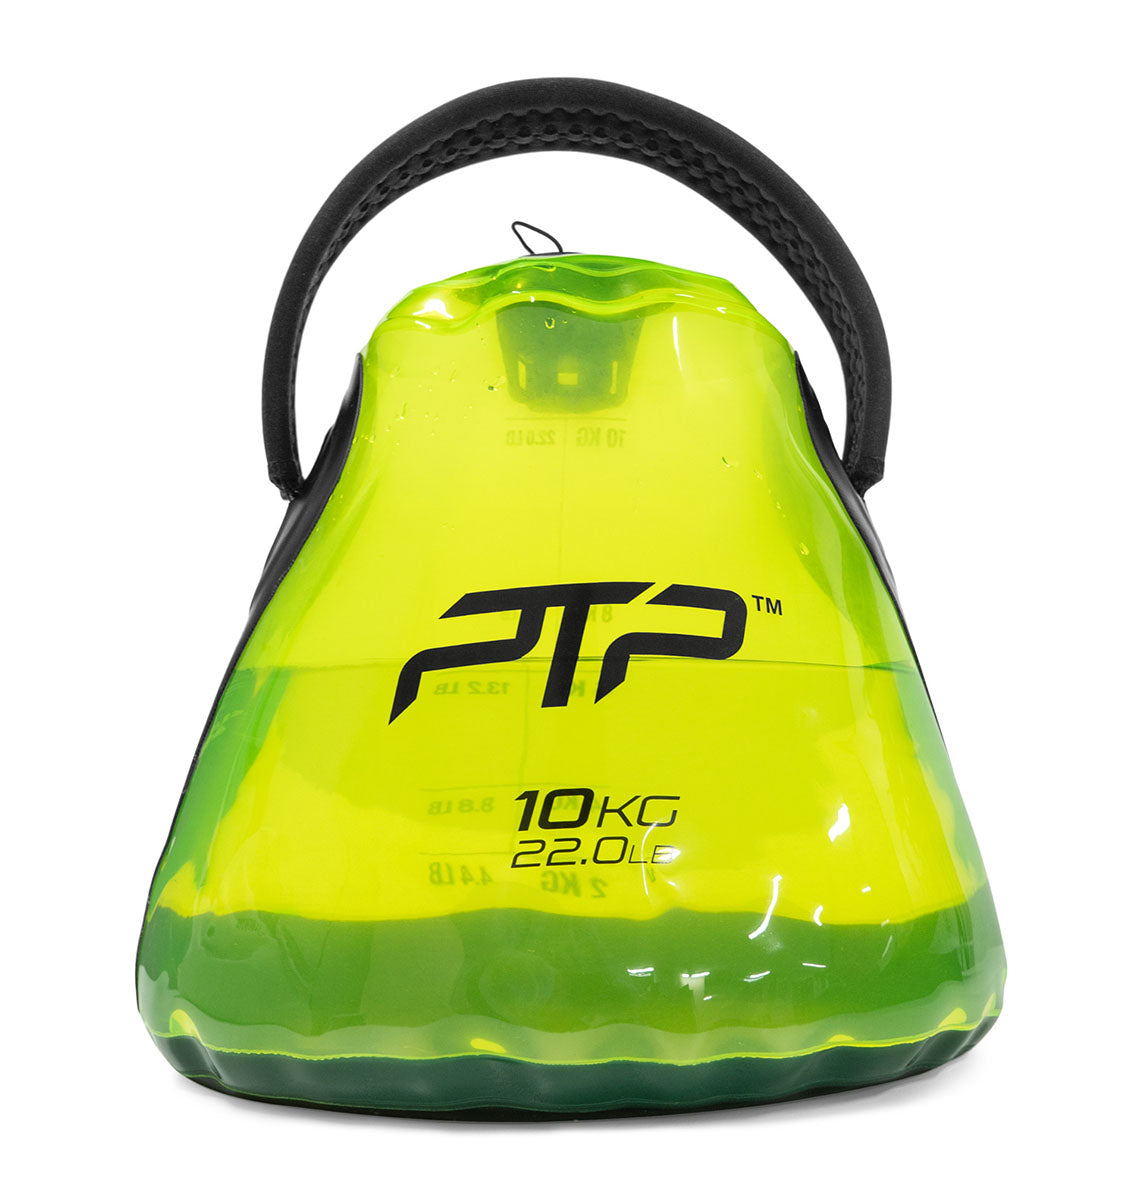 PTP Aquacore - Water-filled Kettle Bag - 10kg - 1